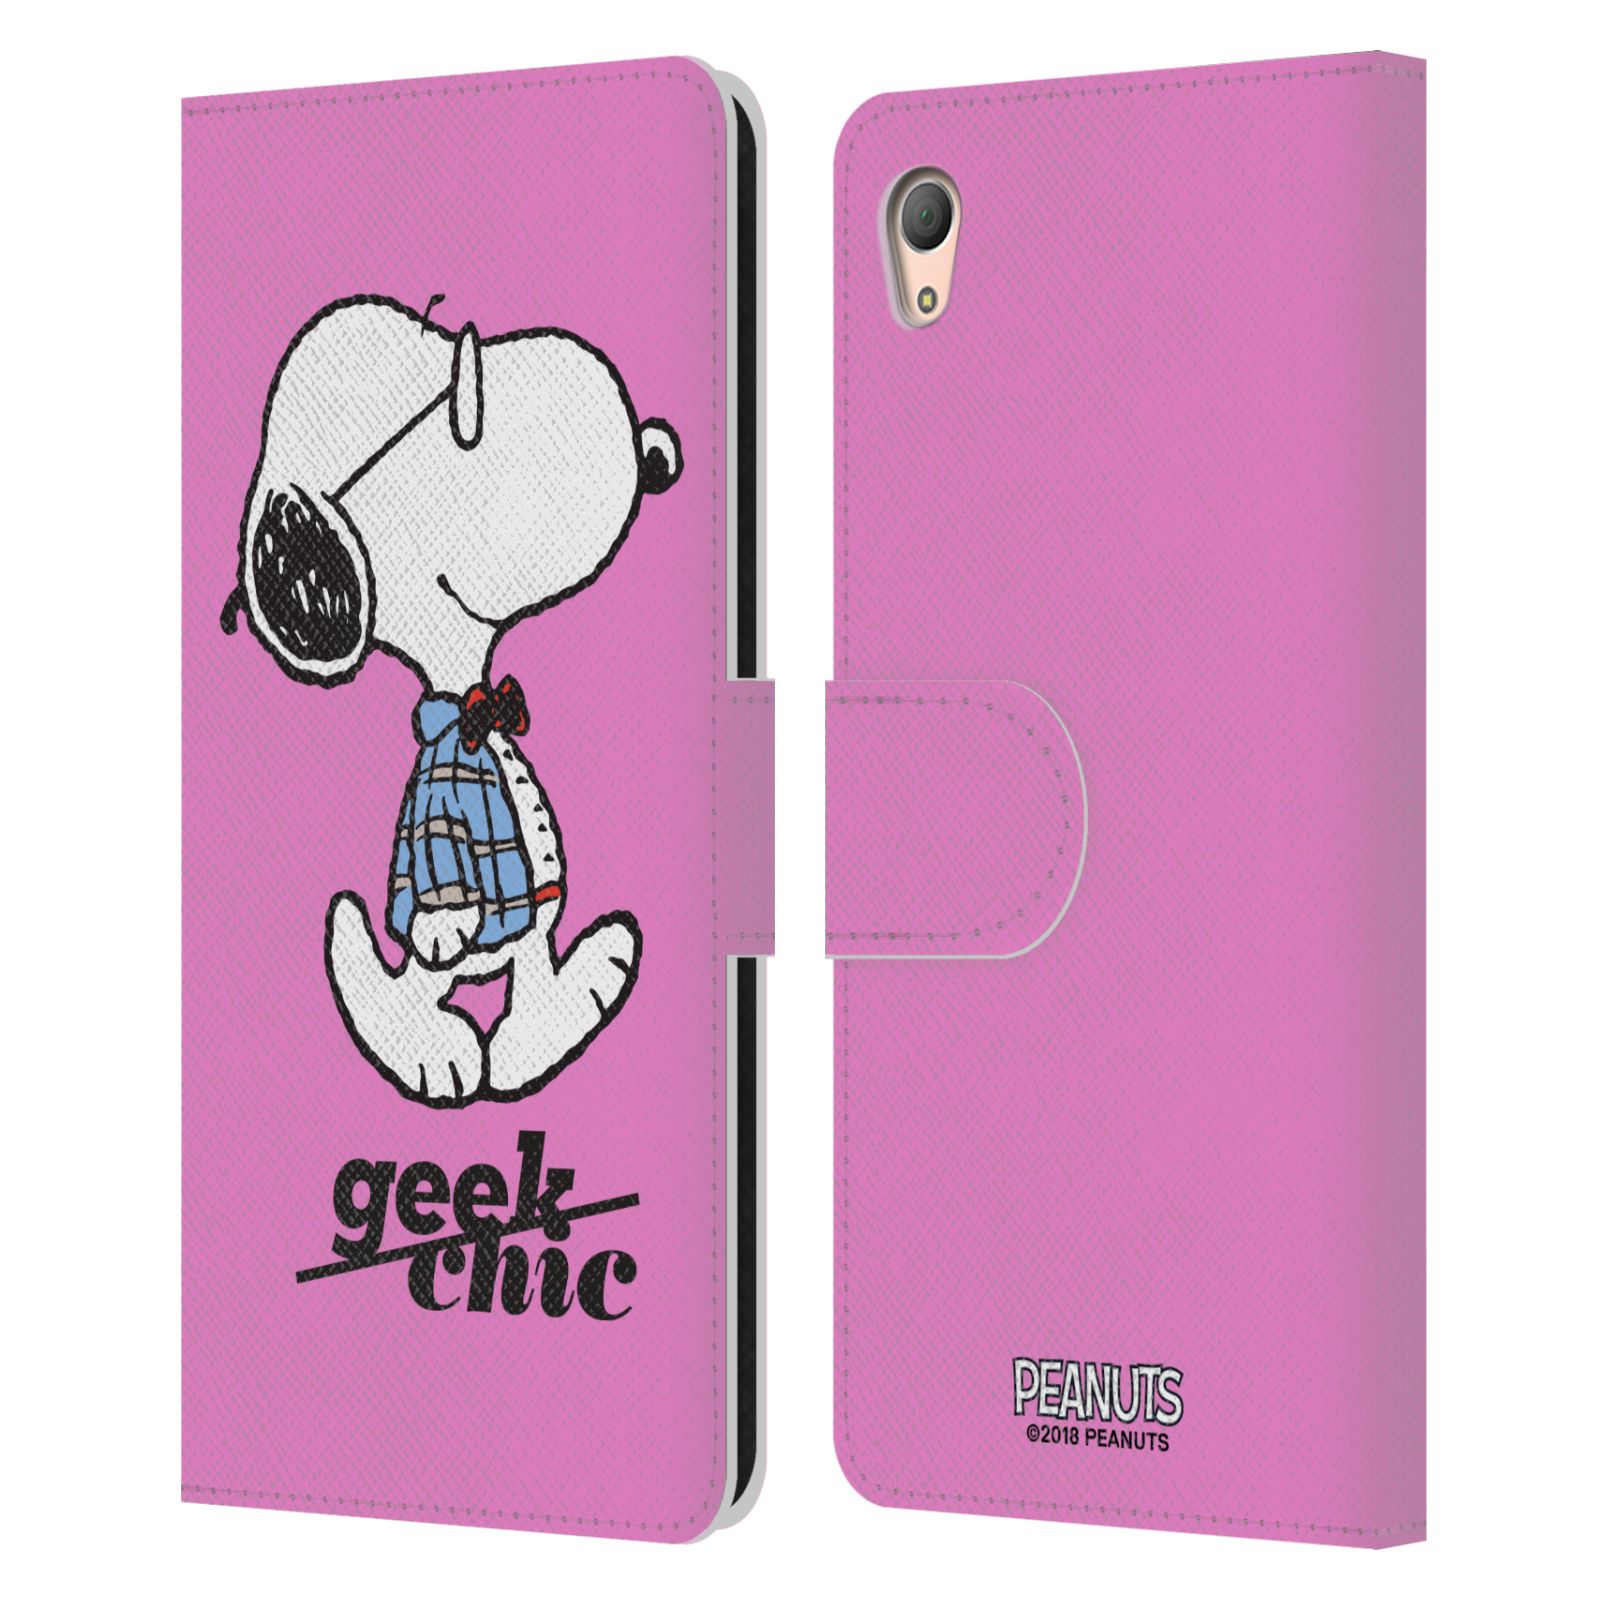 Pouzdro na mobil Sony Xperia Z3 PLUS - Head Case - Peanuts - růžový pejsek snoopy nerd